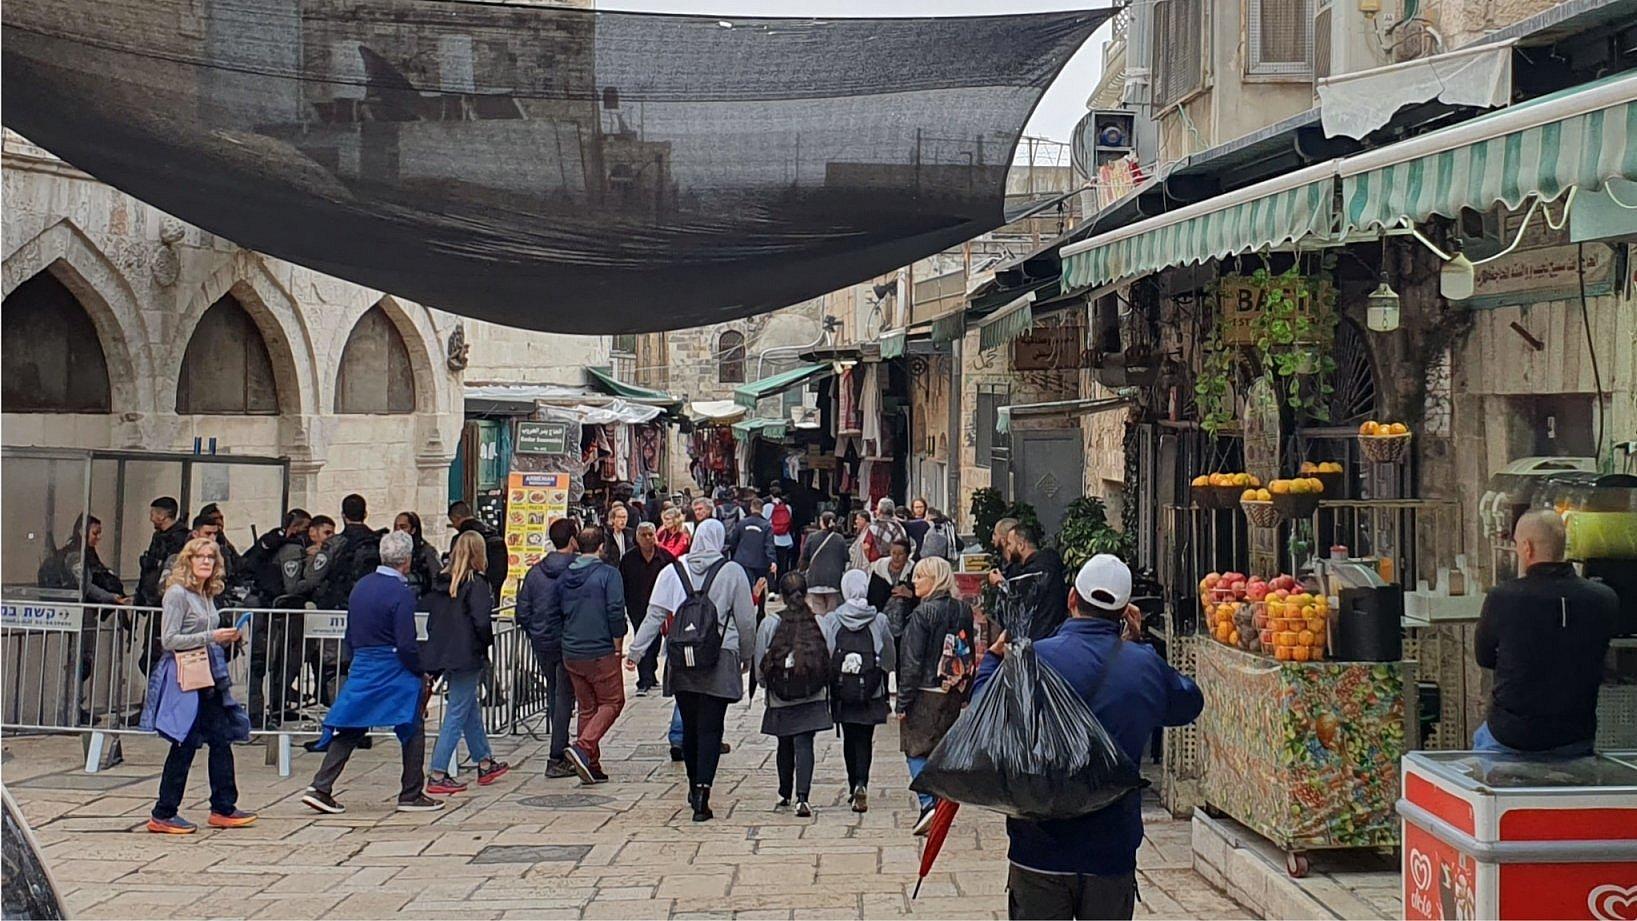 Ein belebte Straße in der Jerusalemer Altstadt. Israelische Sicherheitskräfte haben dort einen Posten errichtet. Touristen und Einheimische laufen vorbei.